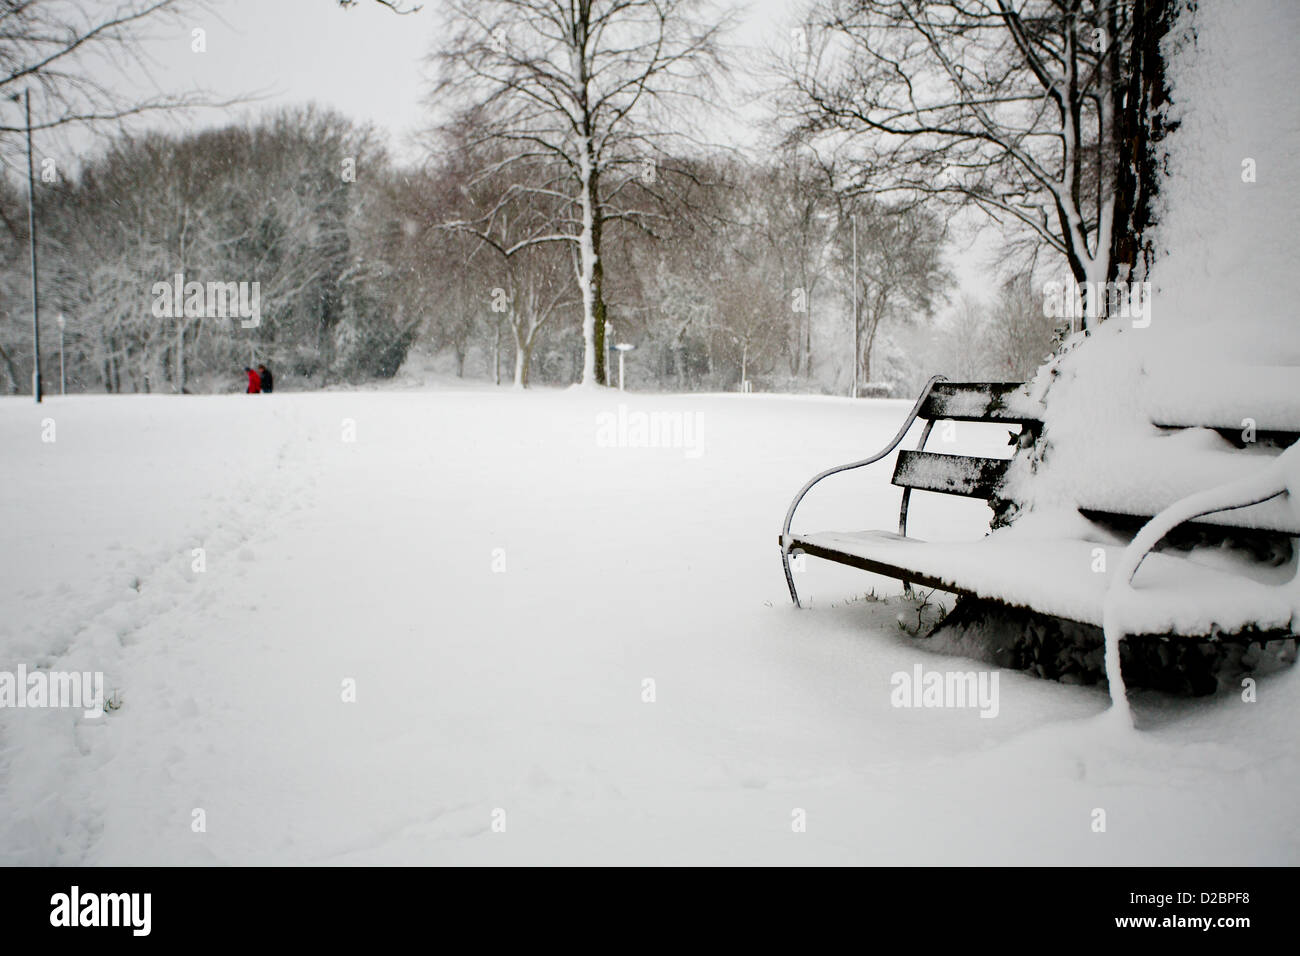 Deux hommes les éléments de renfort de faire une promenade dans la neige. Banc avec Banque D'Images